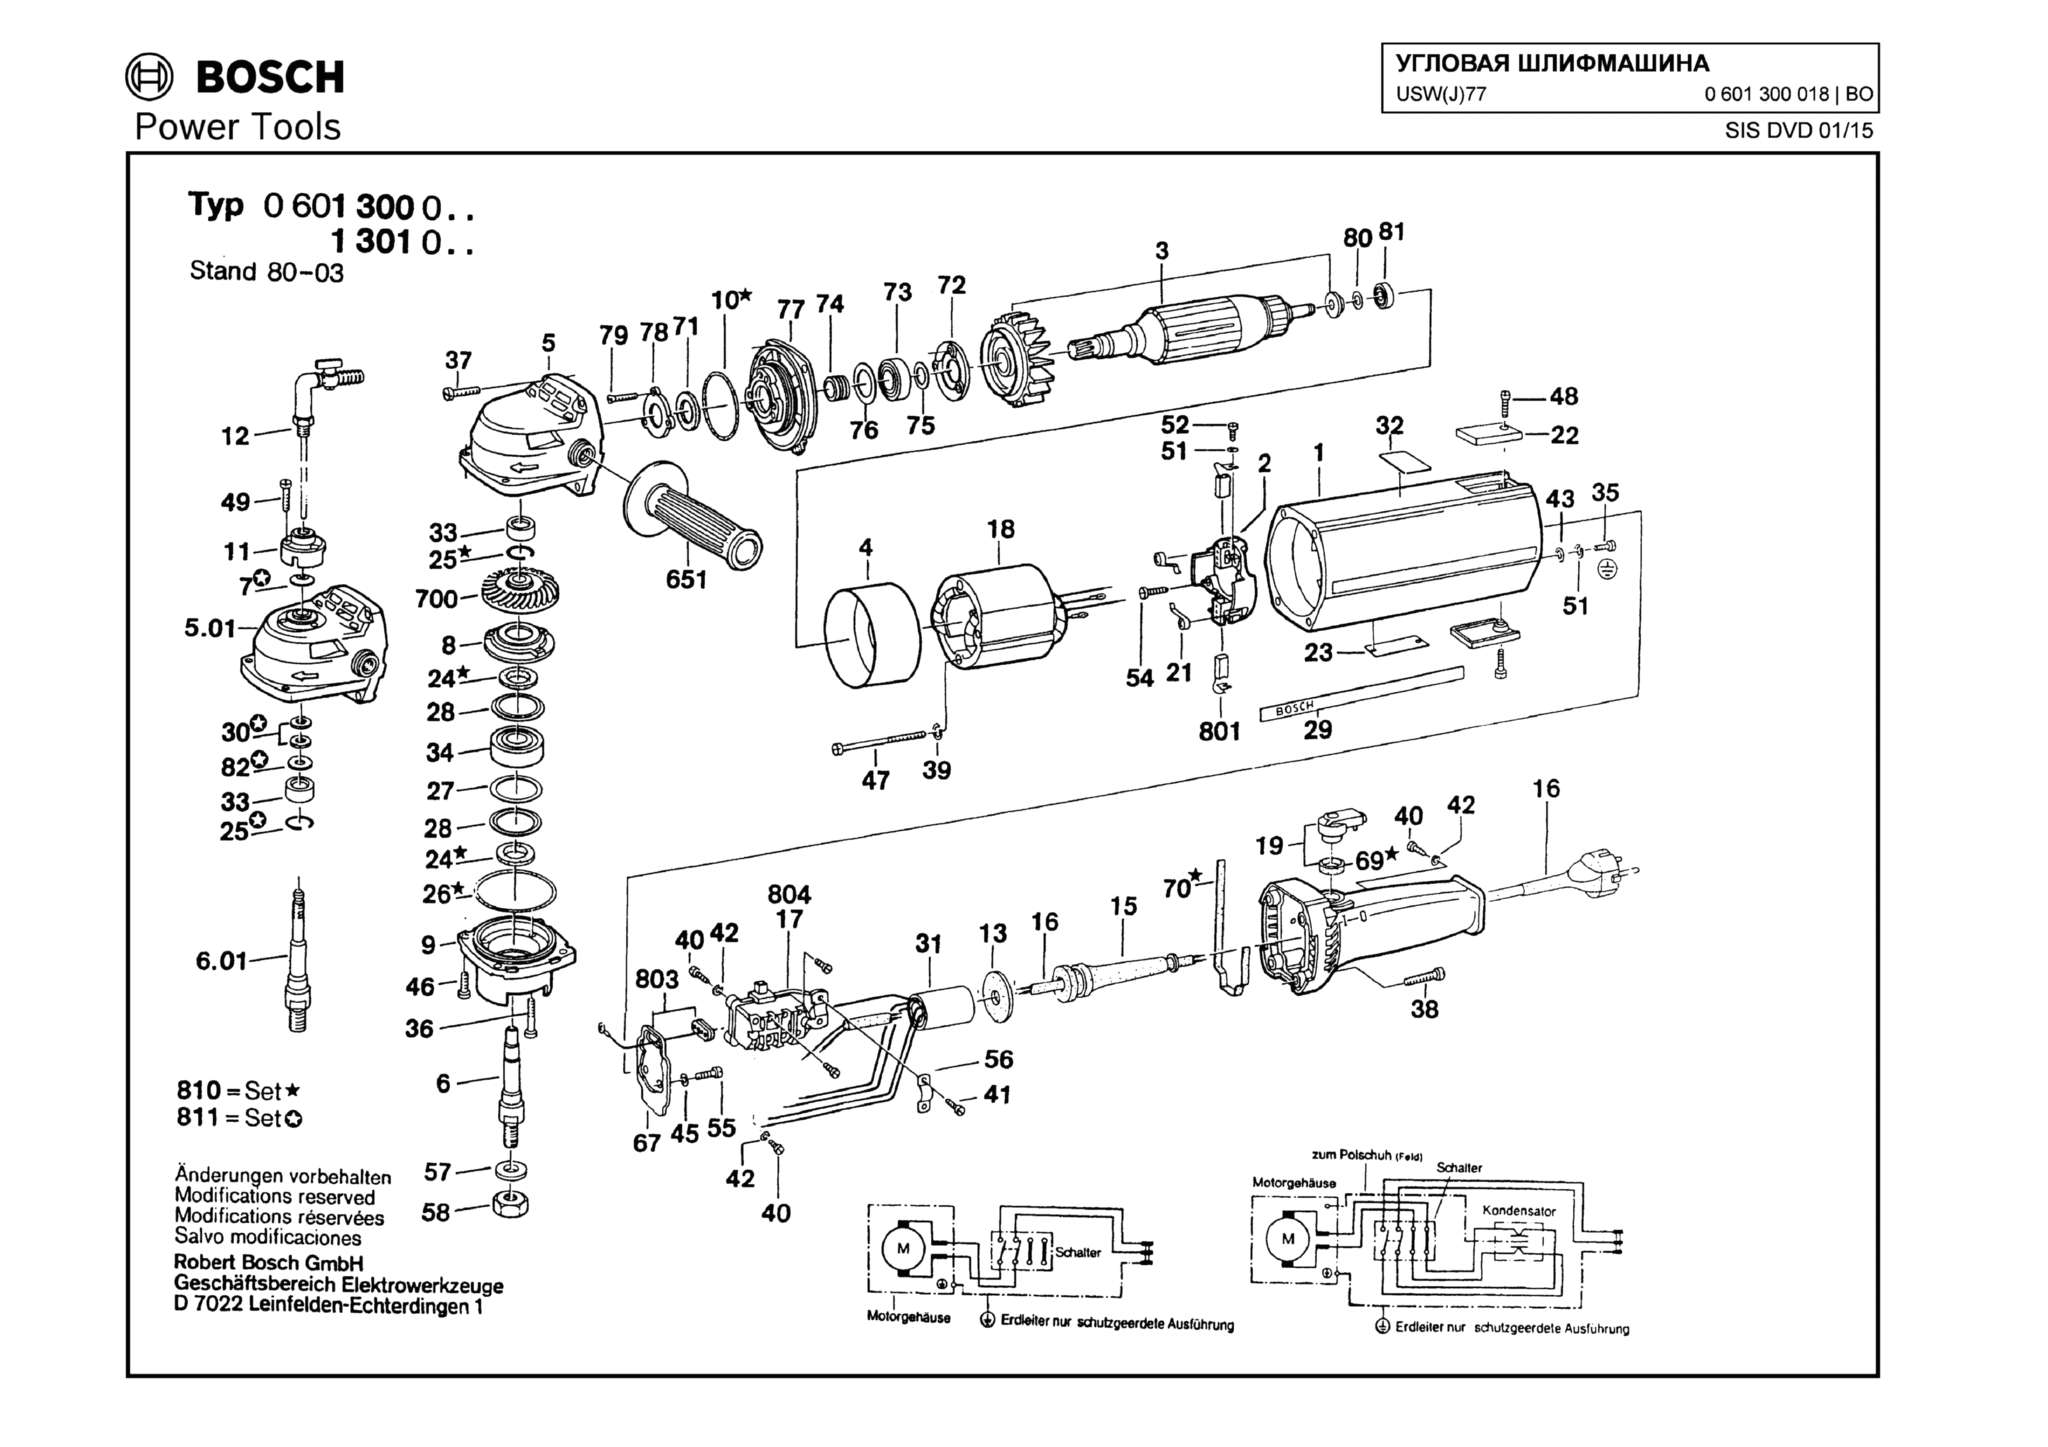 Запчасти, схема и деталировка Bosch USW(J)77 (ТИП 0601300018)